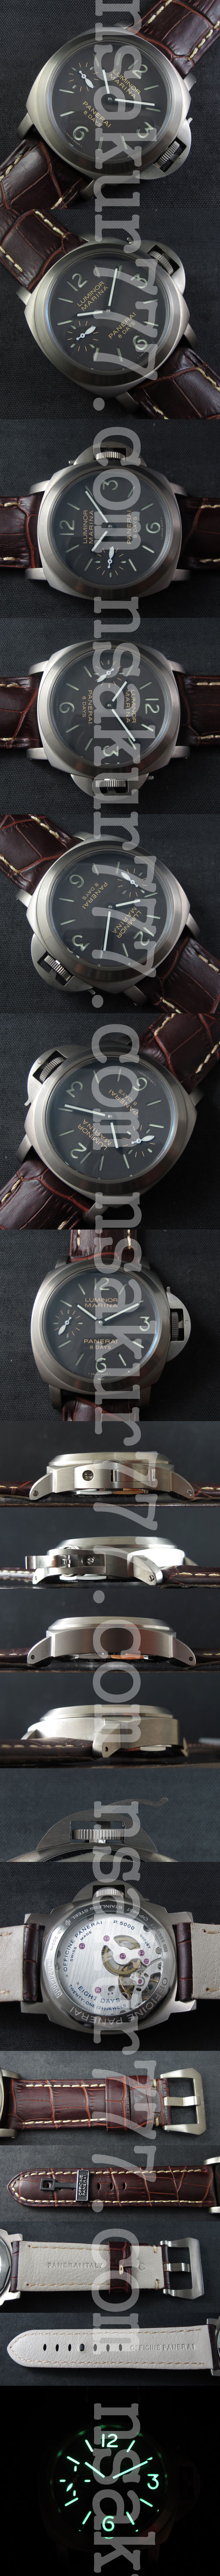 高級ビジネス腕時計パネライルミノールPAM510Asian Unitas 6497ムーブ搭載 (手巻き)